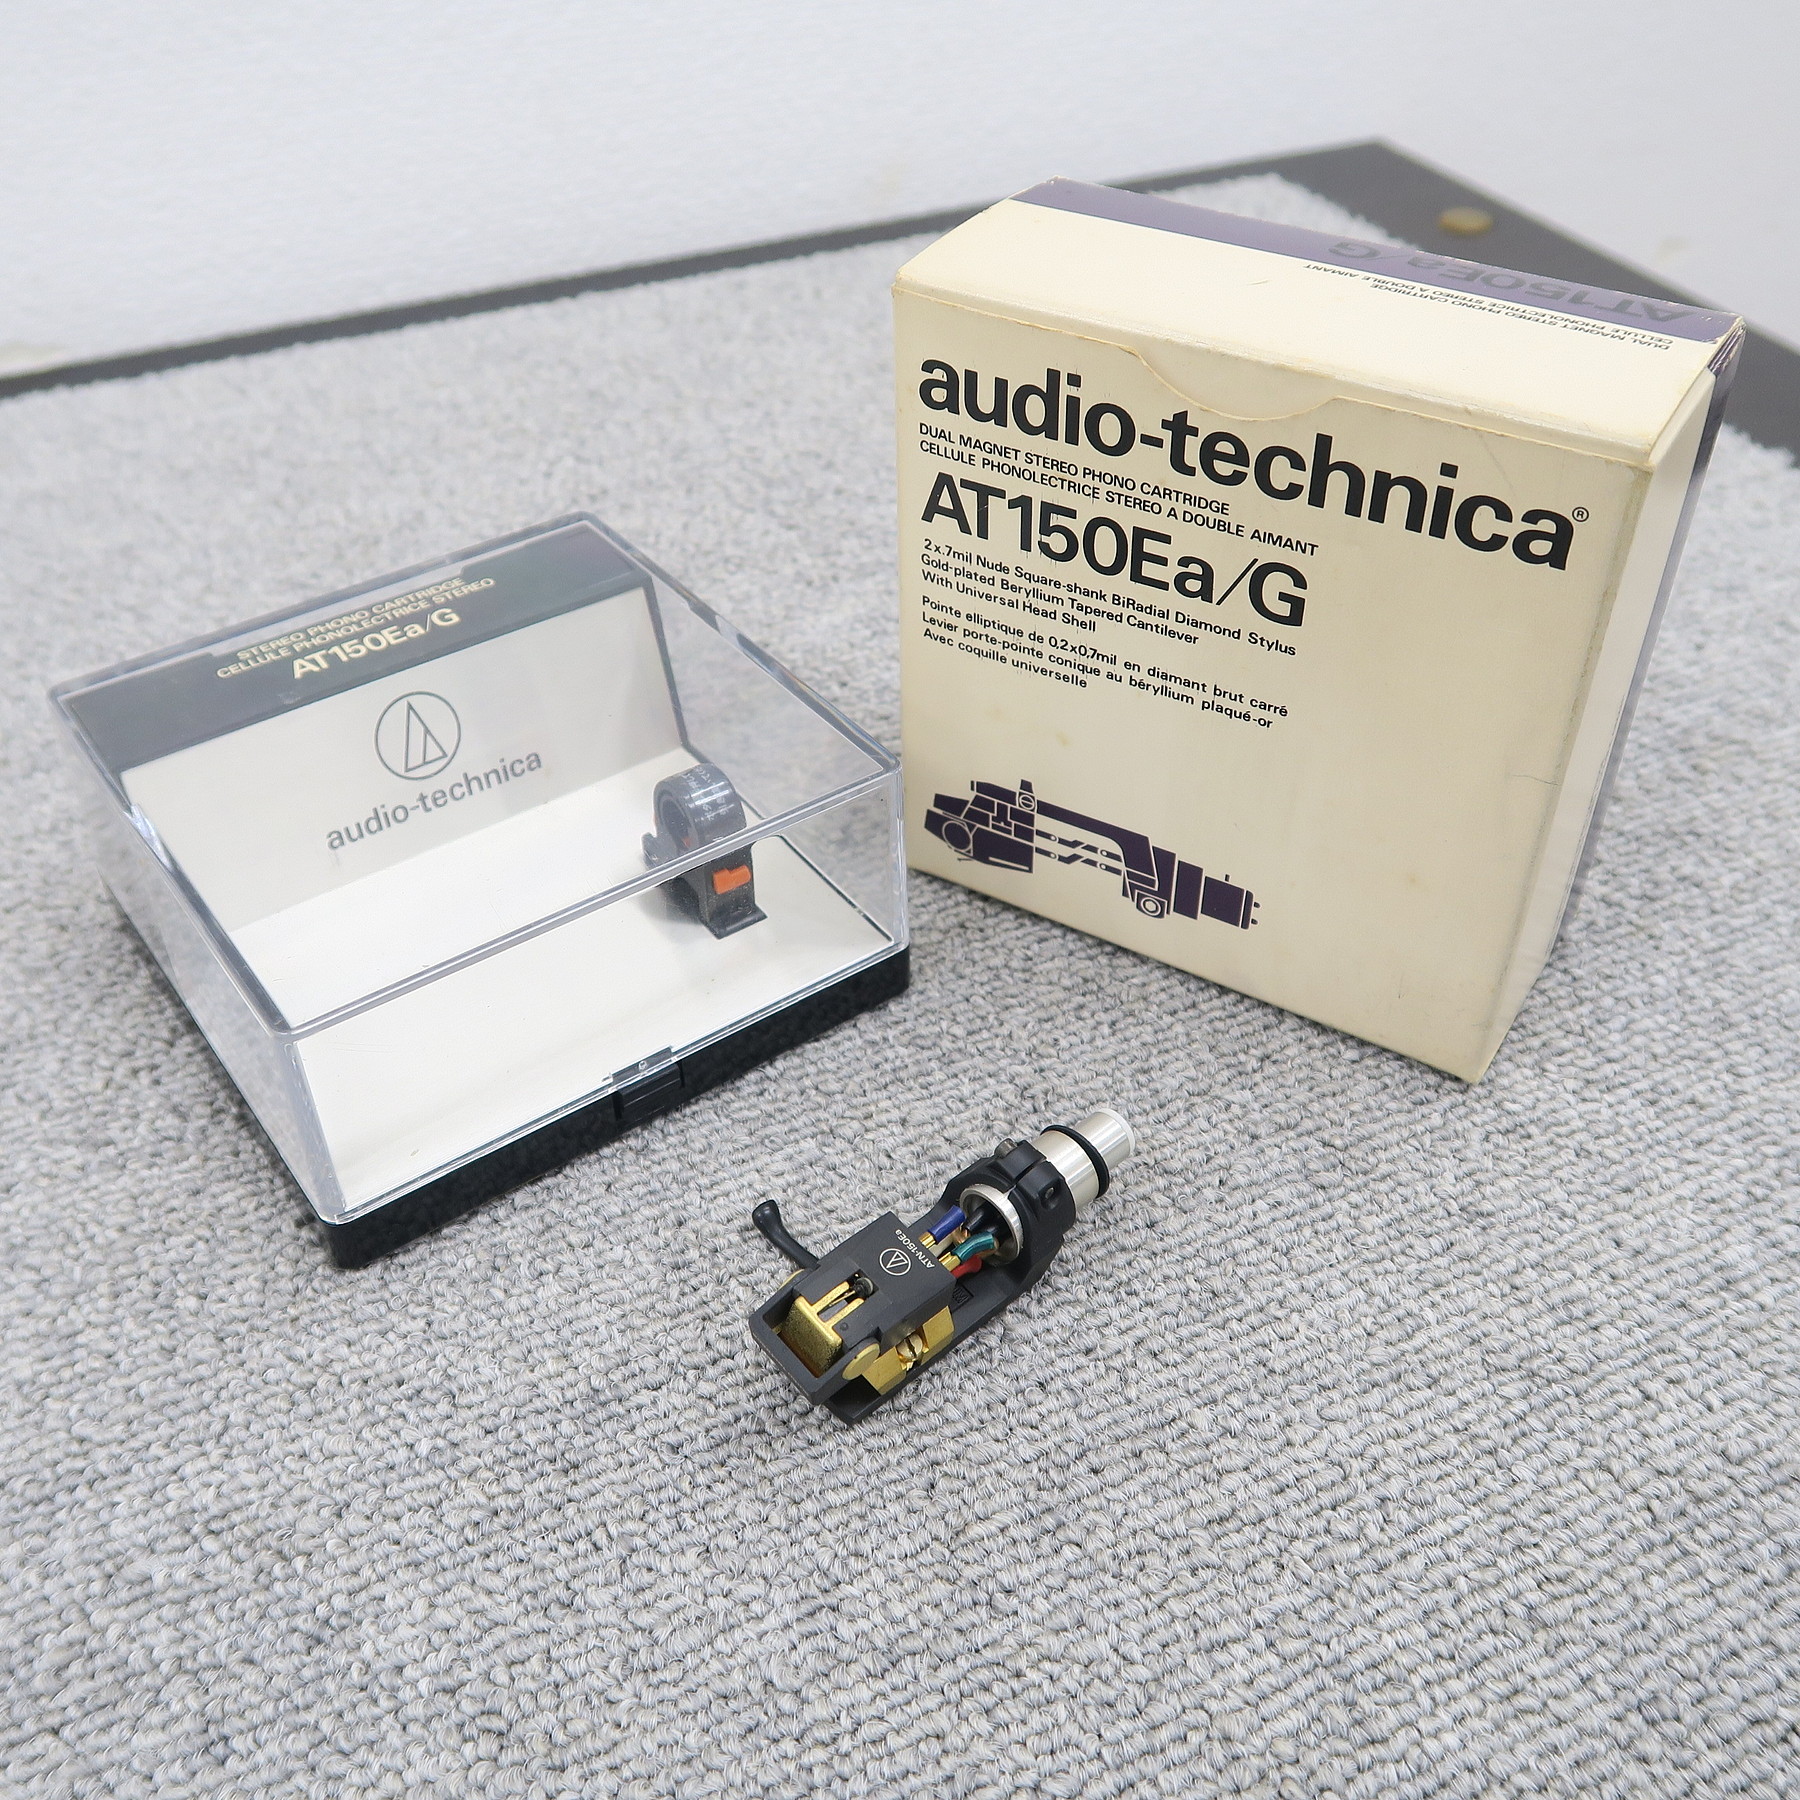 Bランク】audio-technica AT-150Ea/G MMカートリッジ オーディオ